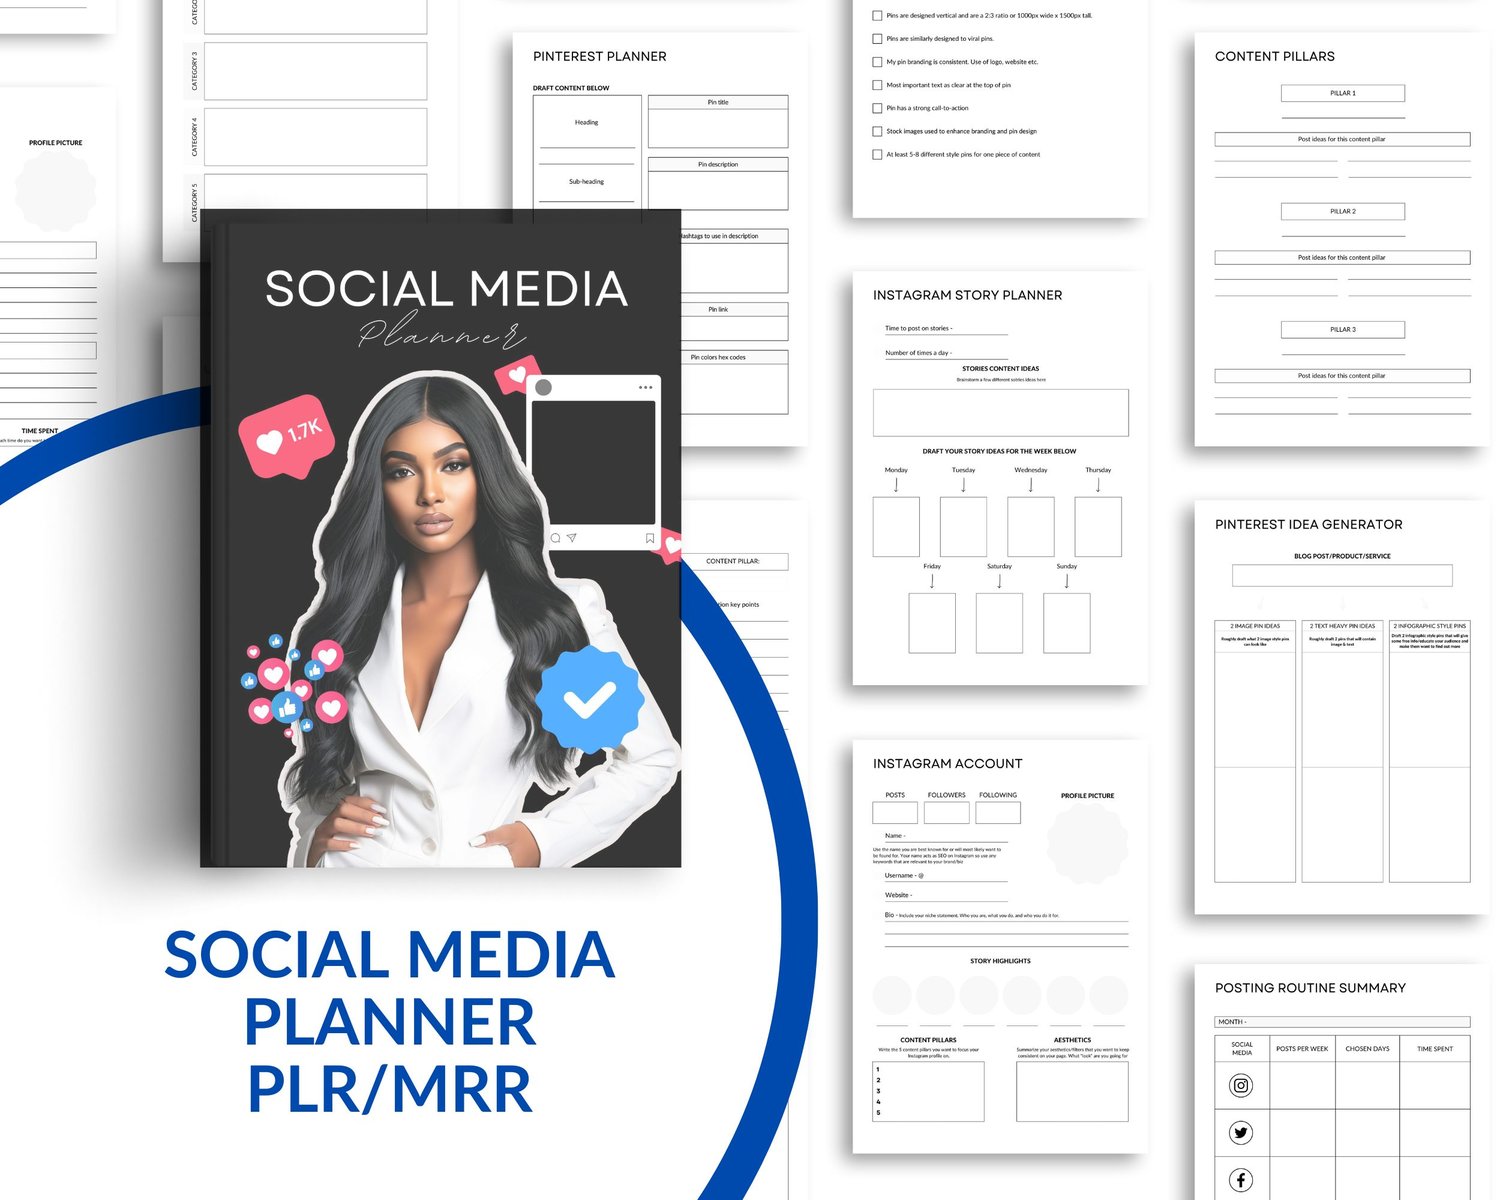 Social Media Planner PLR/MRR